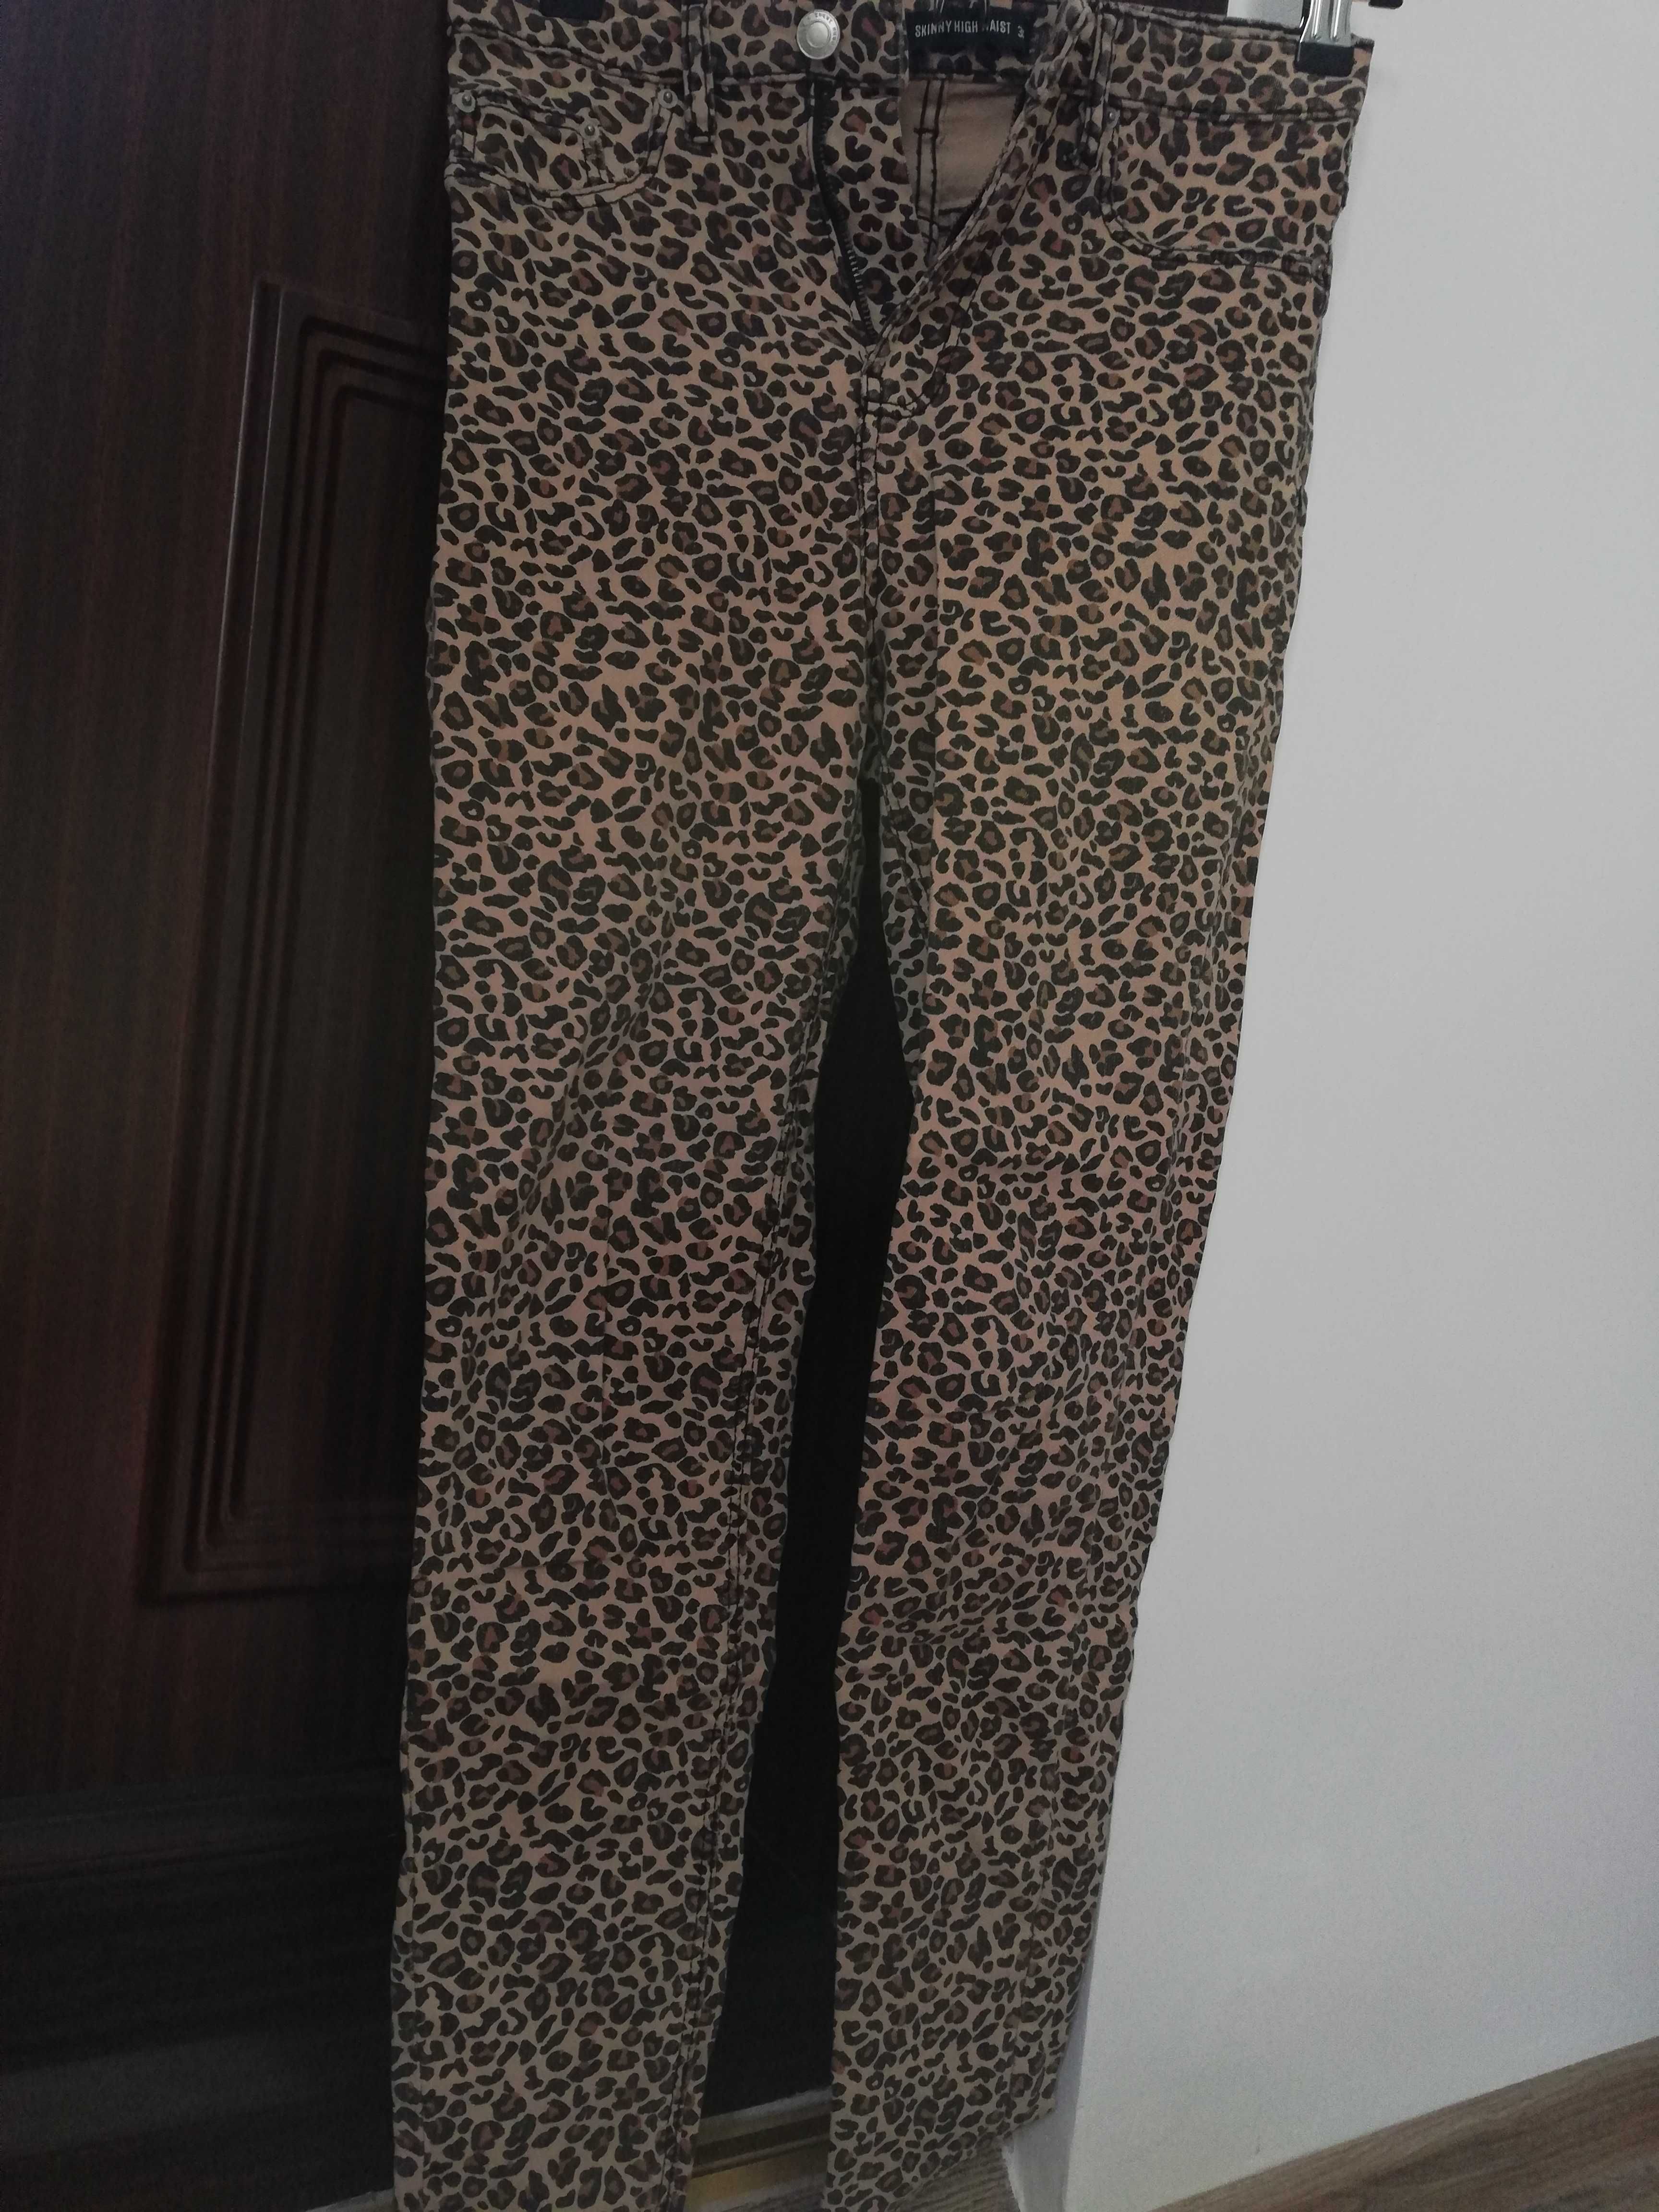 Vând pantaloni noi cu imprimeu leopard